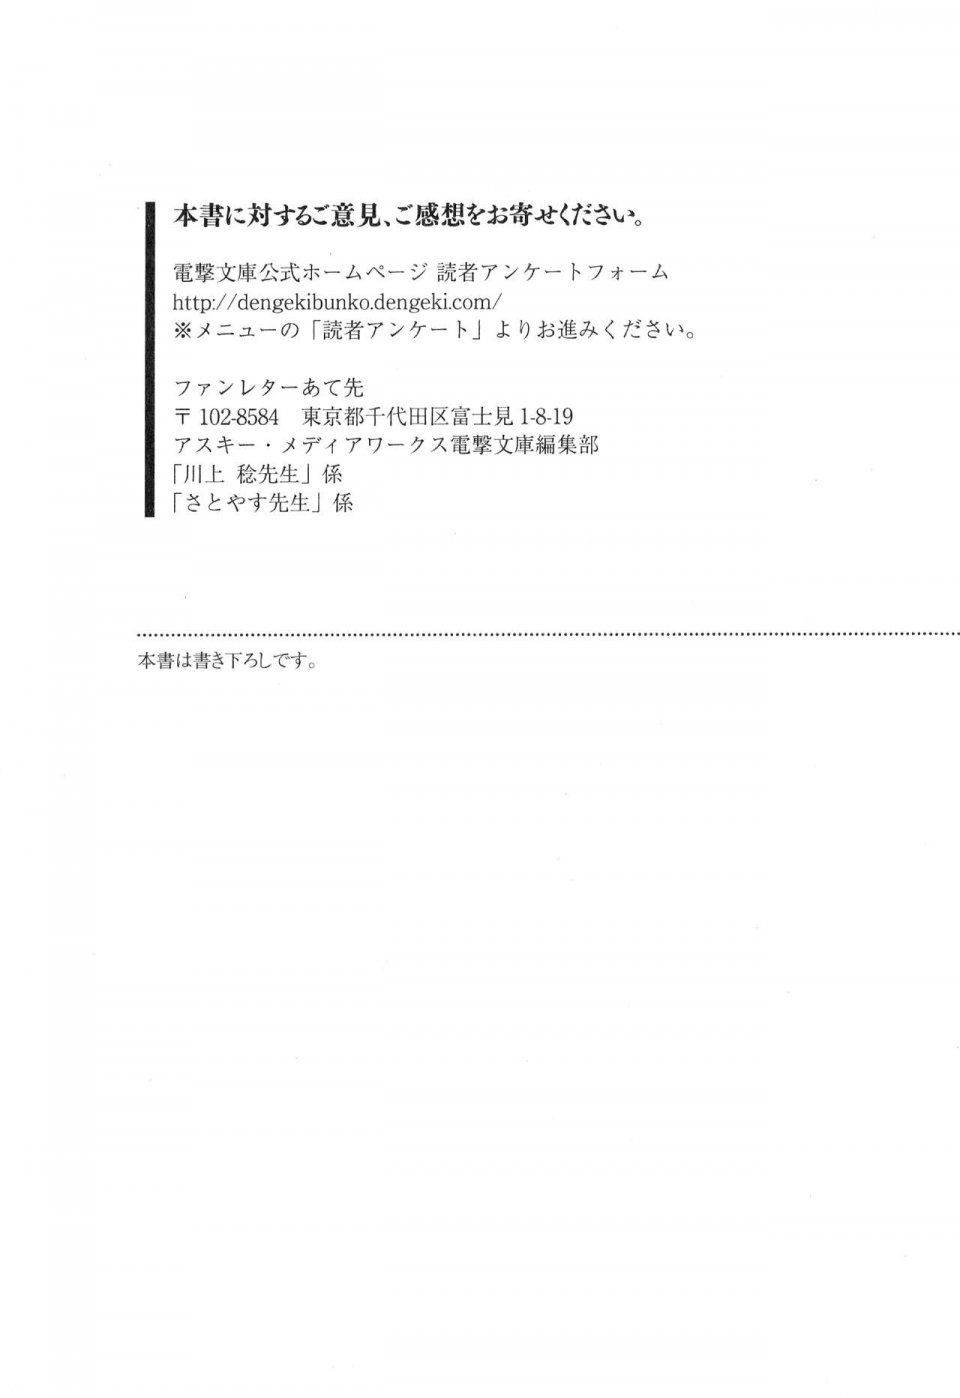 Kyoukai Senjou no Horizon LN Vol 17(7B) - Photo #824